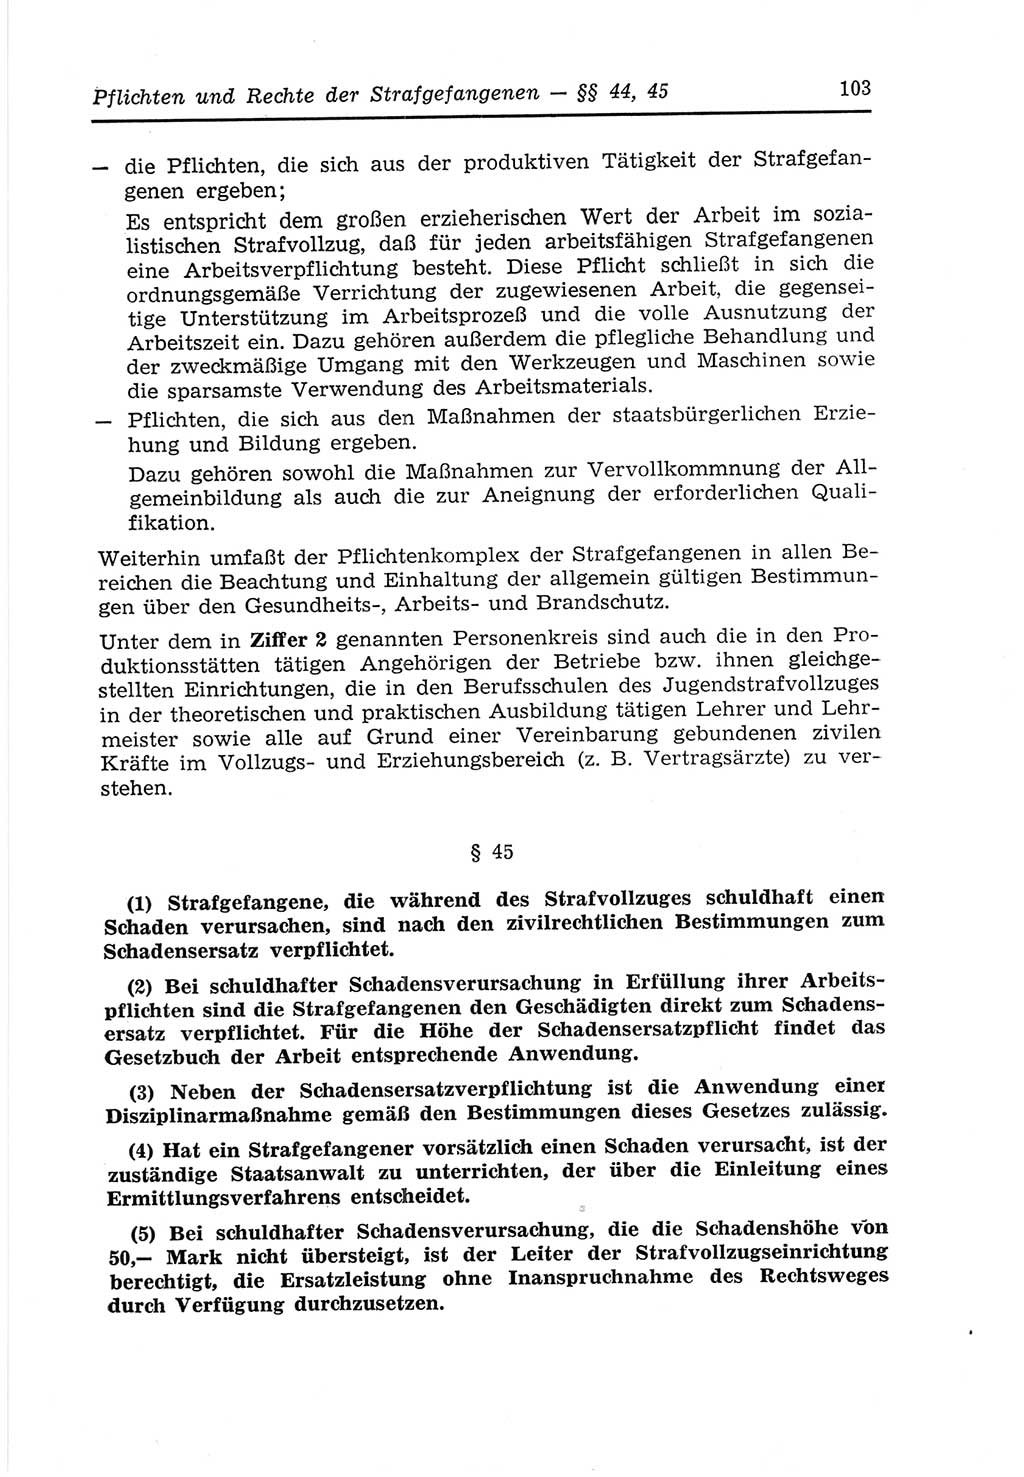 Strafvollzugs- und Wiedereingliederungsgesetz (SVWG) der Deutschen Demokratischen Republik (DDR) 1968, Seite 103 (SVWG DDR 1968, S. 103)